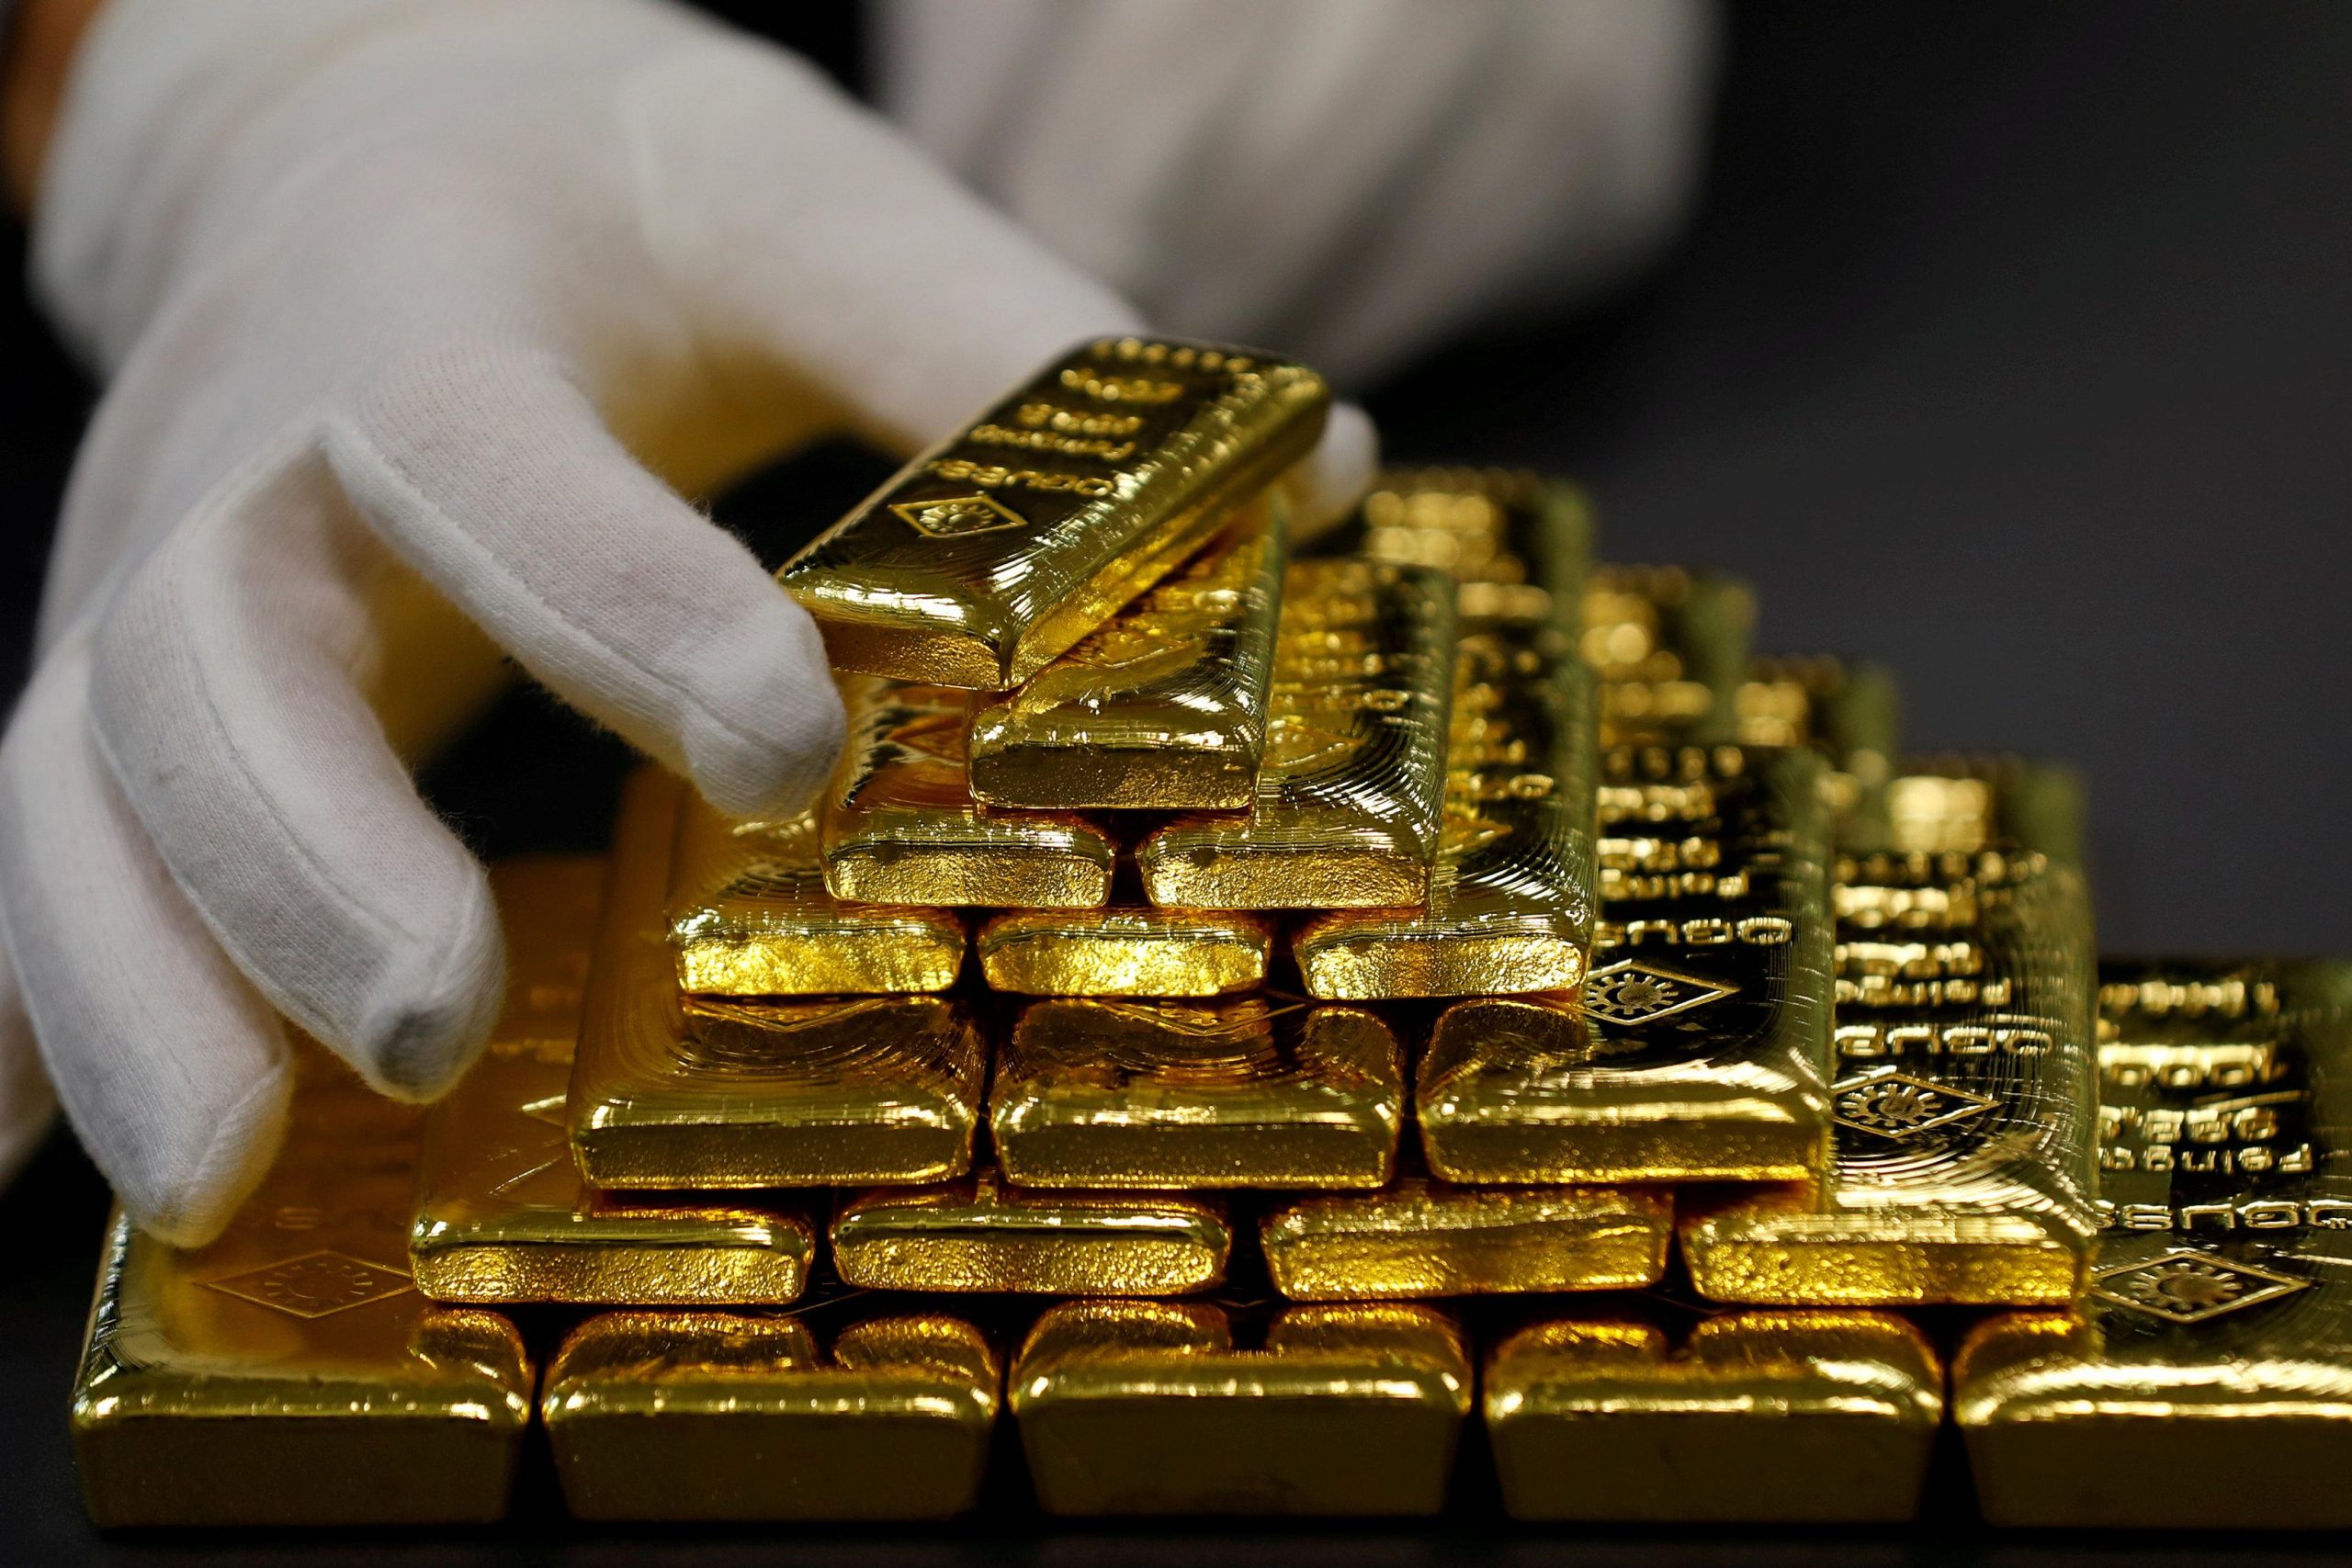 Λονδίνο: Η μεγαλύτερη ληστεία στον κόσμο – Οι ράβδοι χρυσού αξίας 40 εκατ. δολαρίων που «έκαναν φτερά» (βίντεο)